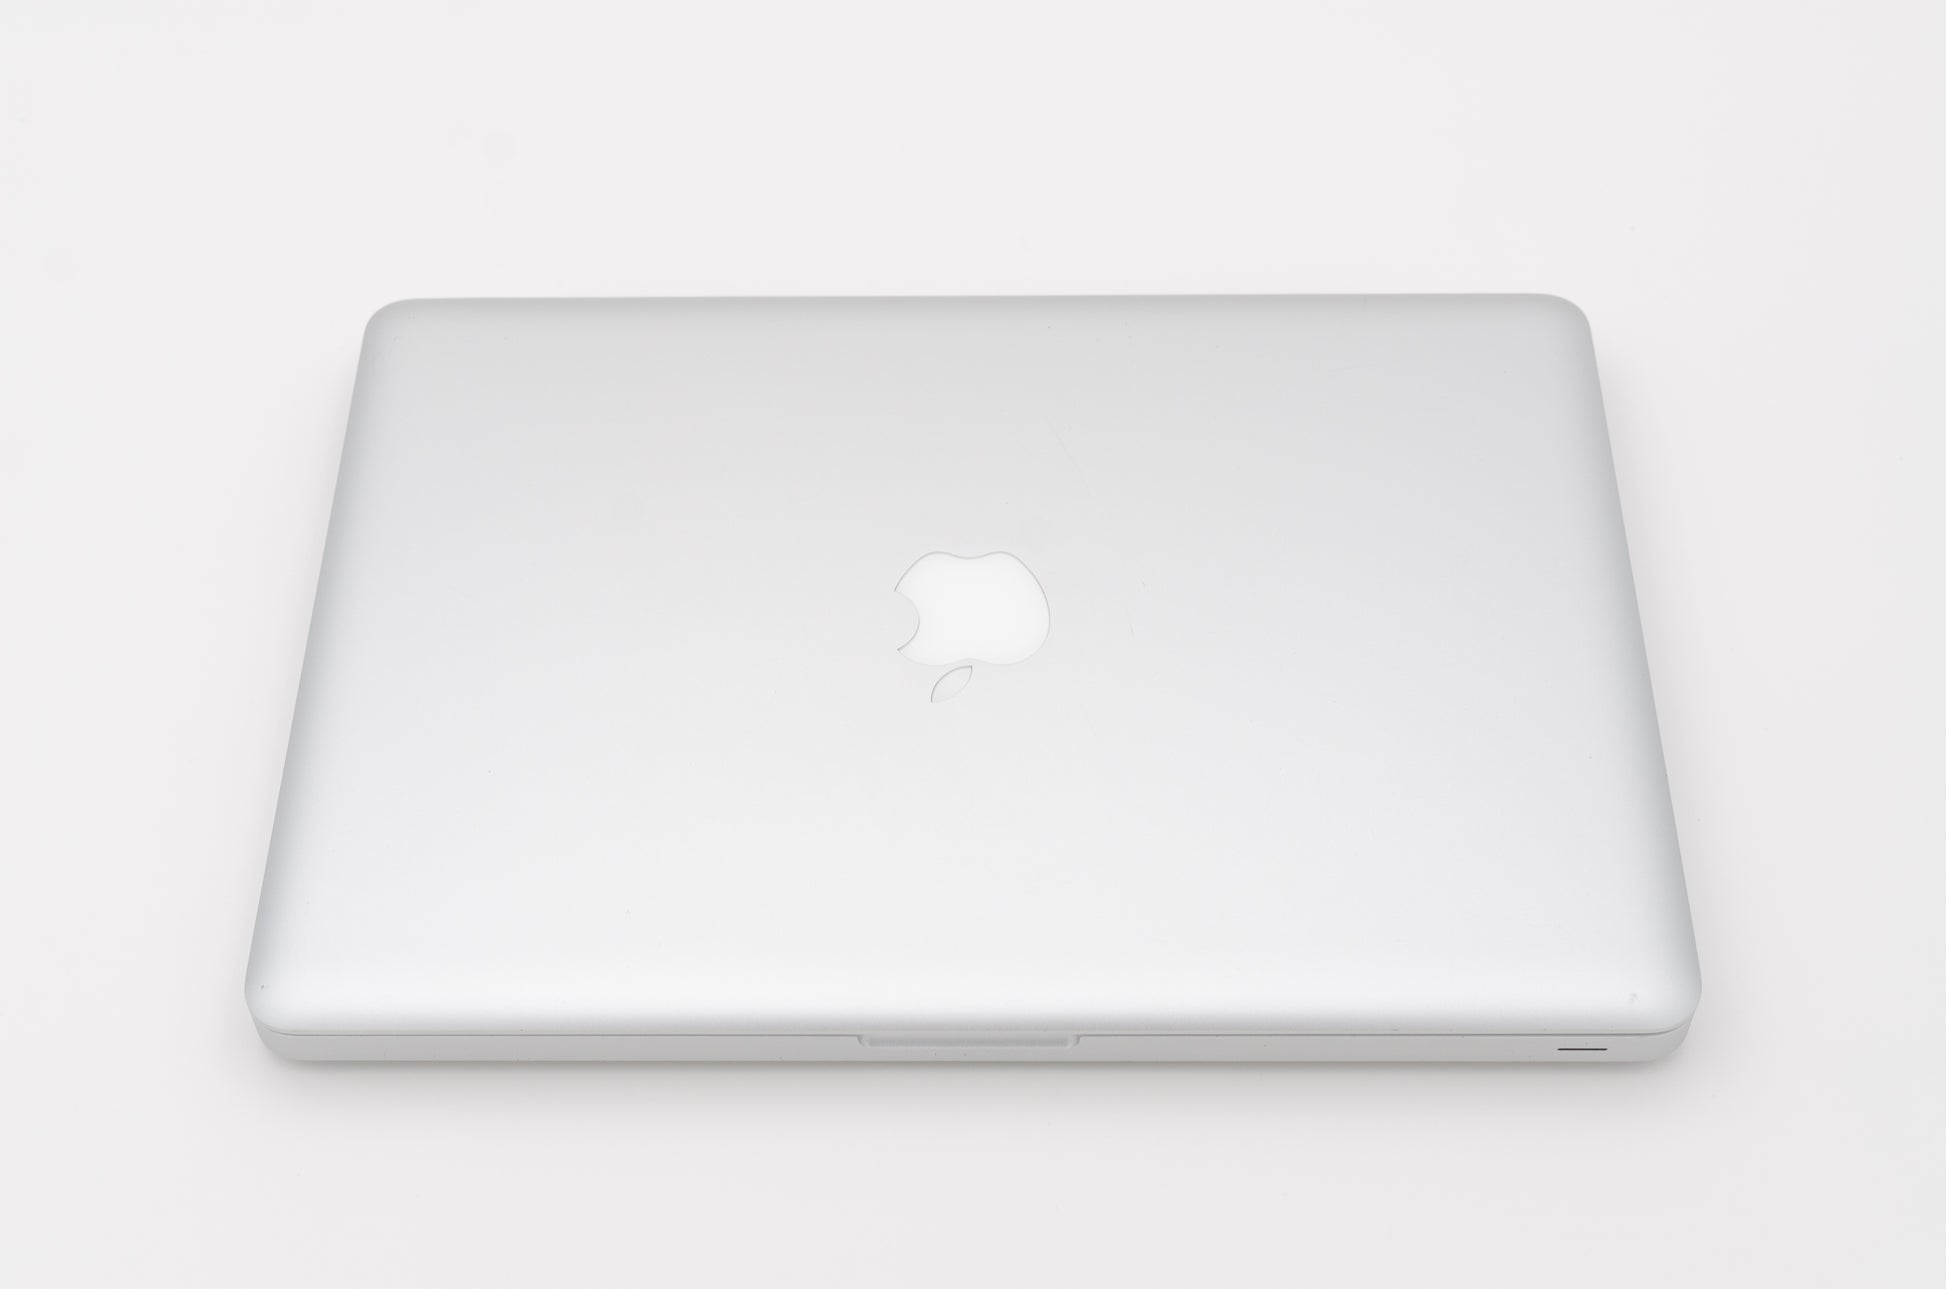 apple-mid-2009-13.3-inch-macbook-pro-a1278-aluminum-c2d - 2.53ghz processor, 4gb ram, 940m - 256mb gpu-mb991ll/a-3